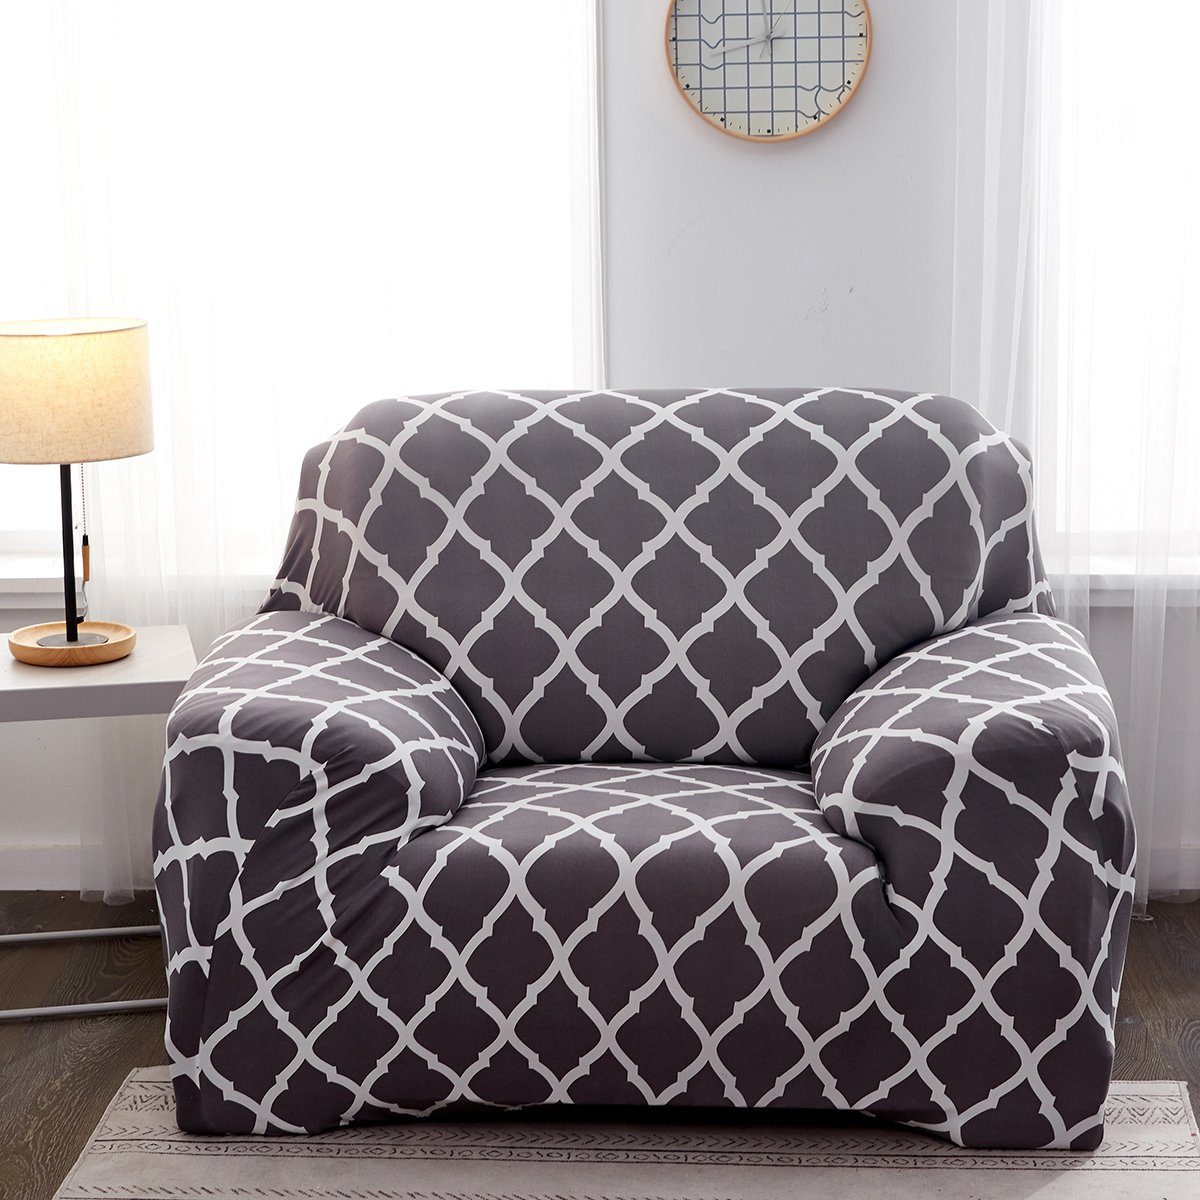 Sofahusse Bedruckt, elastisches, für Armlehnen L-Form Sofa, Rosnek, U-Form Sofa Möbelschutz Grau